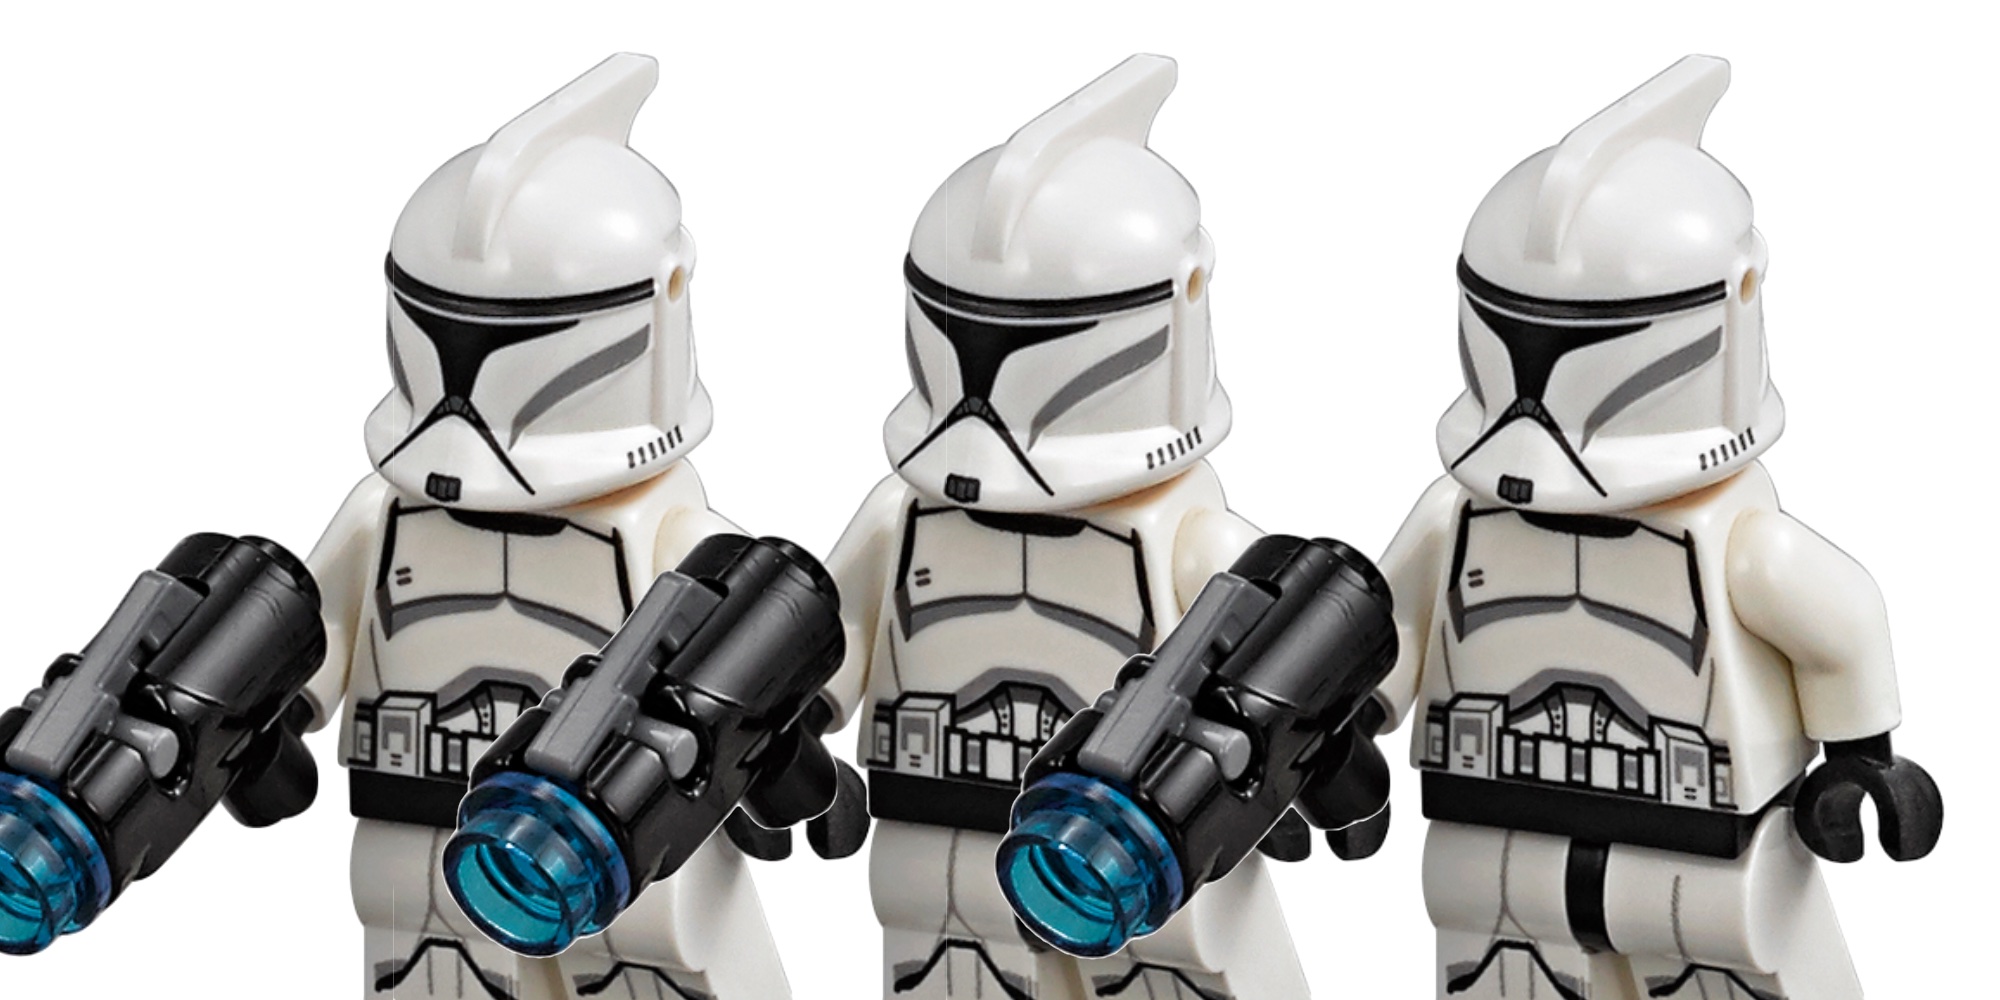 Clone Trooper Accessory Pack